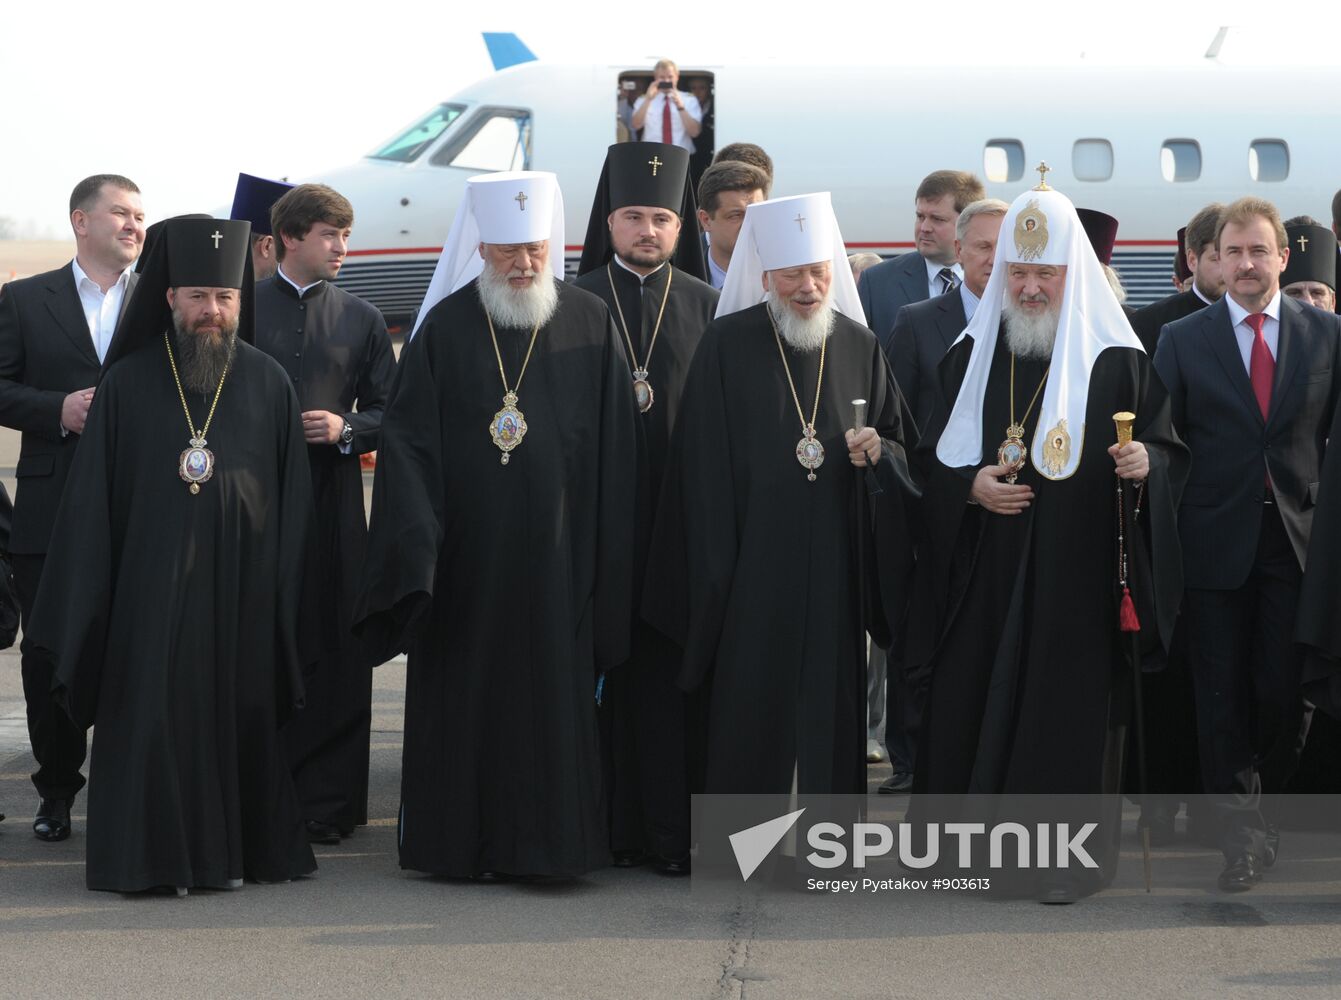 Patriarch Kirill arrives in Kiev